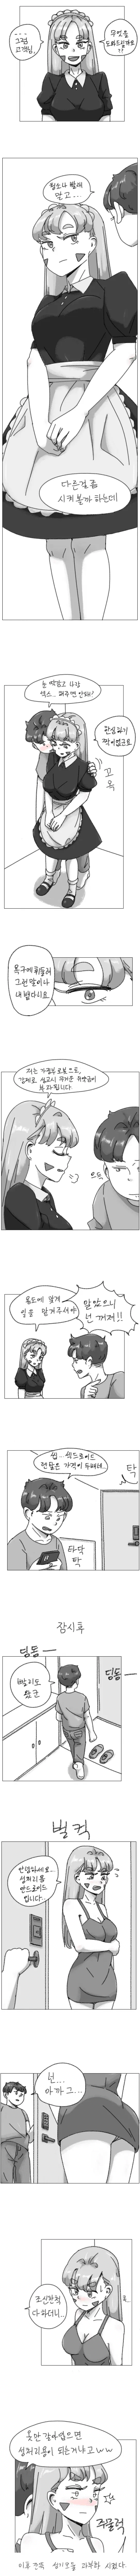 ㅇㅎ) 가정부 안드로이드에게 무리한 부탁을 하는 만화.manhwa | mbong.kr 엠봉